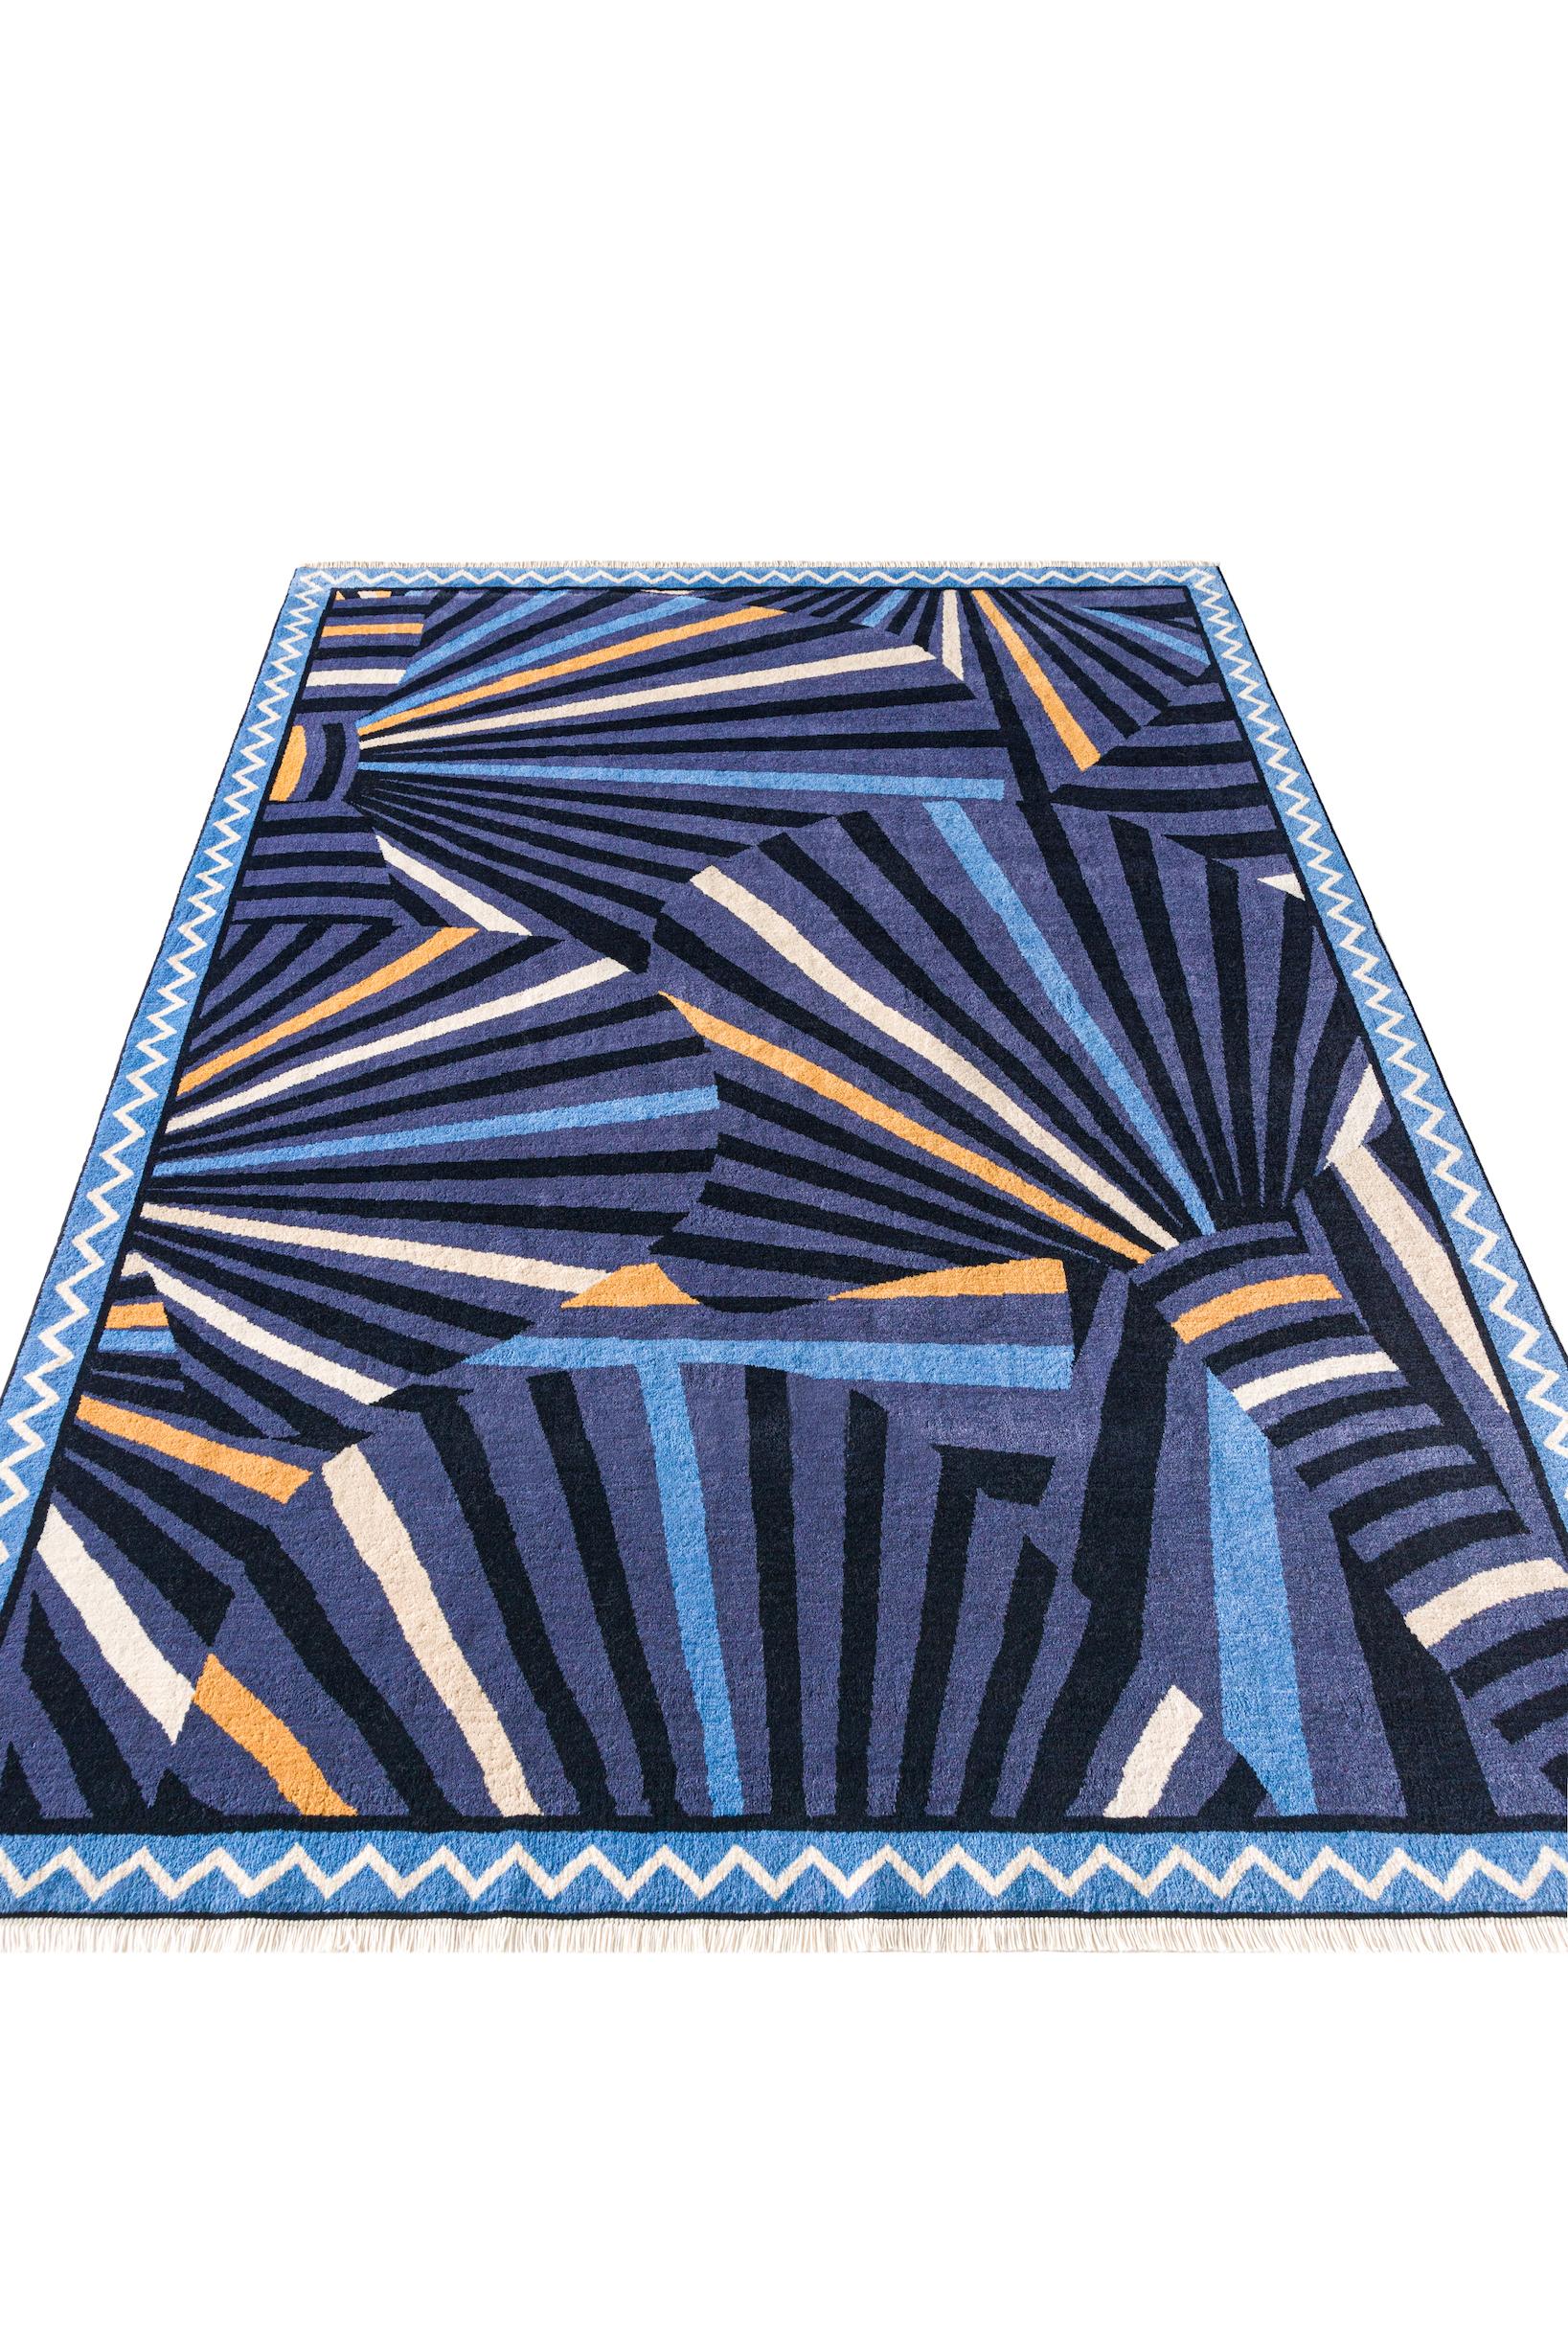 A propos du tapis :
Ce tapis noué à la main compte 160 000 nœuds par mètre carré, une construction à double nœud, et est composé de 100 % de laine de Nouvelle-Zélande pour le fil de surface et de 100 % de coton égyptien pour la chaîne et la trame.